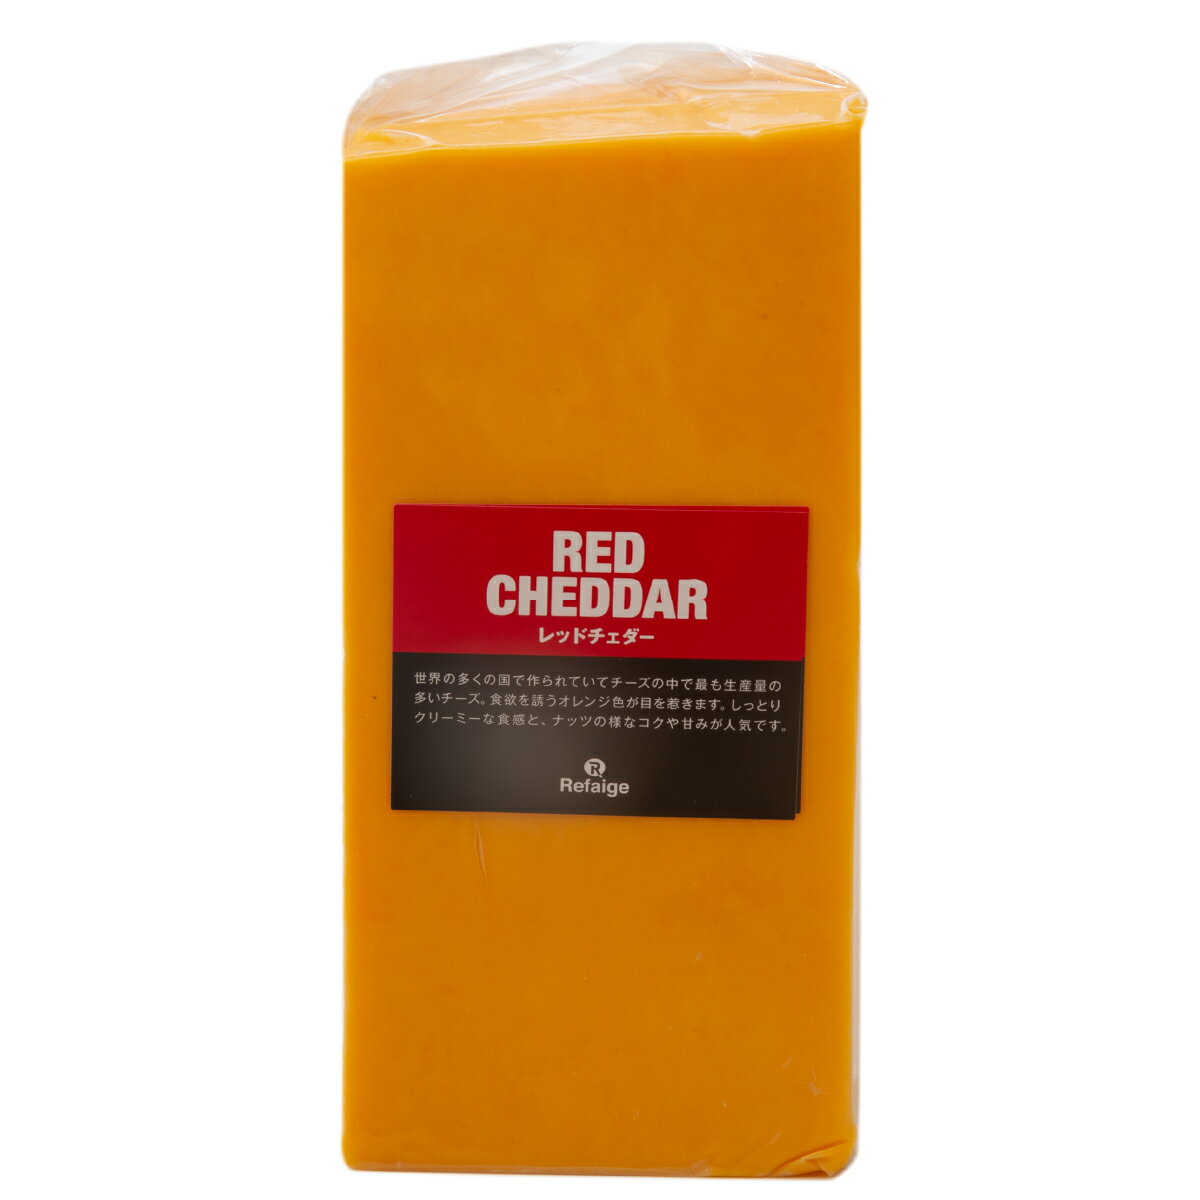 レッドチェダー チェダーチーズはイギリスを代表するチーズですが、現在では世界中の多くの国で作られております。チーズの中で最も生産量の多いタイプになります。牛乳を原料とするセミハードタイプのチーズ。レッドチェダーチーズはチェダーチーズを植物性着色料アナトー色素で色付けしたオレンジ色が特徴です。クセの強い香りは無く、チーズ初心者にも食べやすいチーズです。さっぱりした酸味とねっとりとした食感が特徴です。 ＜鮮やかなオレンジ色が食卓を彩ります＞ そのままはもちろんですが、細かく切ってサラダのトッピングや食パンにのせて焼いてもグッドです。 種類別 ナチュラルチーズ 原材料名 生乳、食塩／アナトー色素 原産国 アメリカ 内容量 約900g タイプ セミハード 加工 カット 料理 鮮やかなオレンジ色を生かしてサラダや肉料理のトッピング、スライスしてトーストへ 合うお酒 赤ワイン・ビールなど 個性 ★☆☆ 塩味 ★☆☆ 配送 クール便（商品は真空パック） 賞味期限 お届け後40日以上（未開封時） 保存方法 要冷蔵(10℃以下)乾燥が大敵。 密閉容器にいれて冷蔵庫の野菜室で保存がおすすめです。 開封後は賞味期限に関わらずお早めにお召し上がりください。 栄養成分表示 熱量400kcal、たんぱく質25.0g、脂質33.0g、炭水化物2.0g、食塩相当量1.7g＊100gあたり／推定値 製造・販売者 株式会社リフェージュ　／　埼玉県戸田市美女木5-21-7 ＜仕入・製造・検査・出荷まで自社工場一貫体制にて行っております。＞ 商品規格について 900g未満の場合は1kgあたり税込1,944円にて再計算(減額)させていただきます。